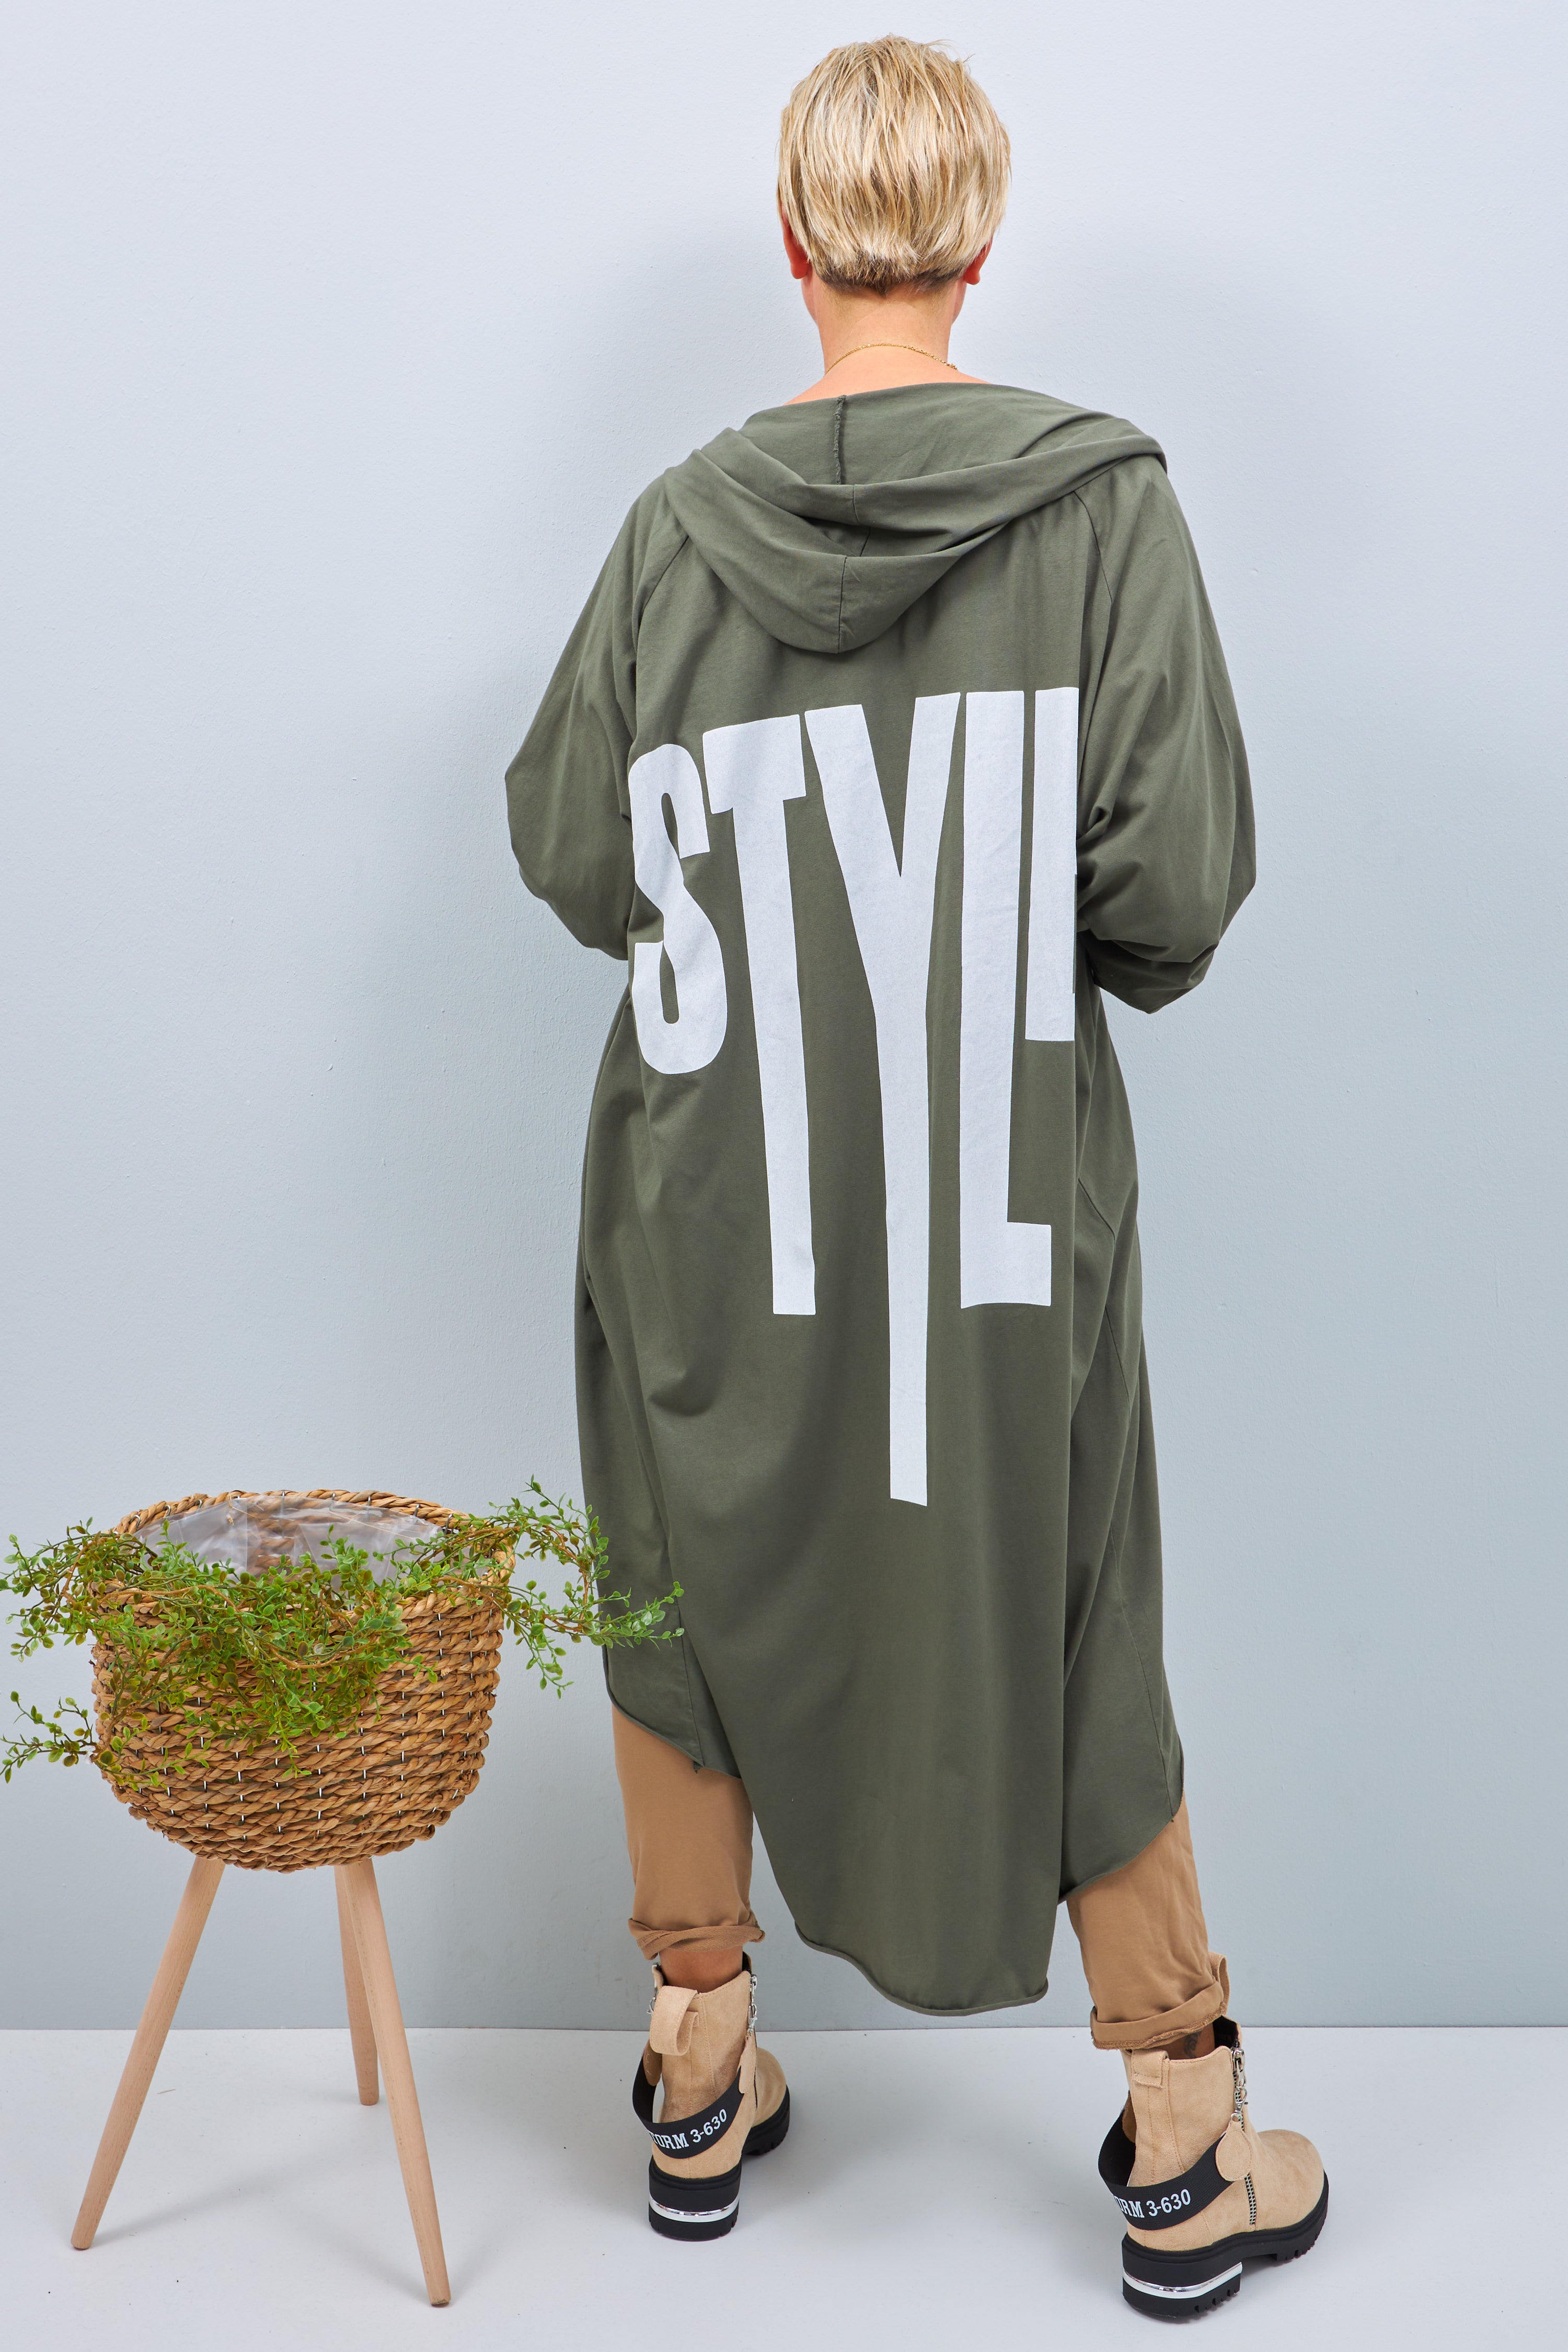 Oversized long jacket with "Style" print, khaki